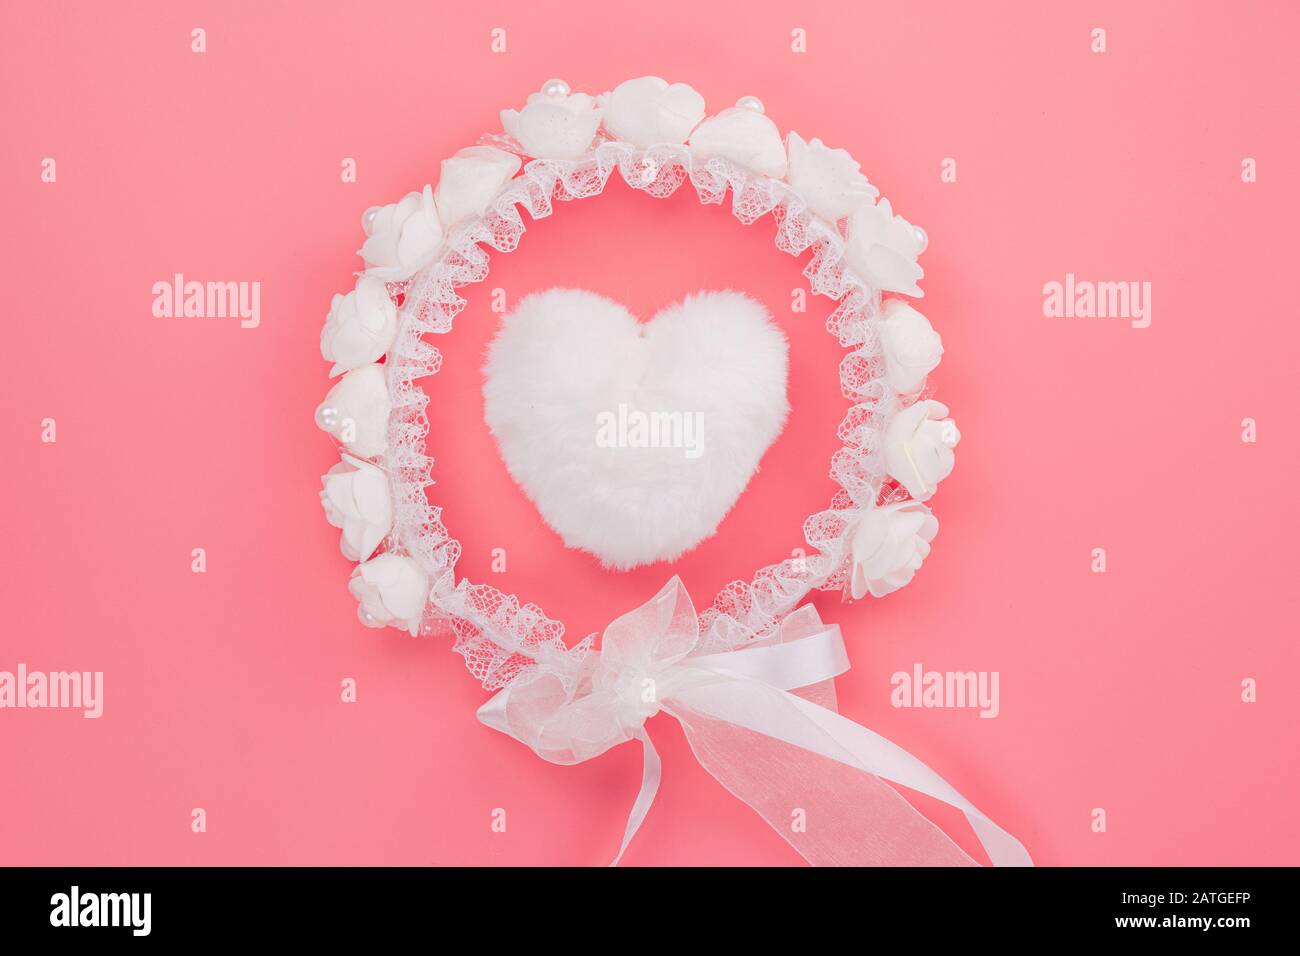 Die weißen Herzformen und der brautschleier über dem rosa Pastellhintergrund. Grußkarten, Love und Valentines Day Konzept. Flaches Layout, Draufsicht, Kopierspac Stockfoto